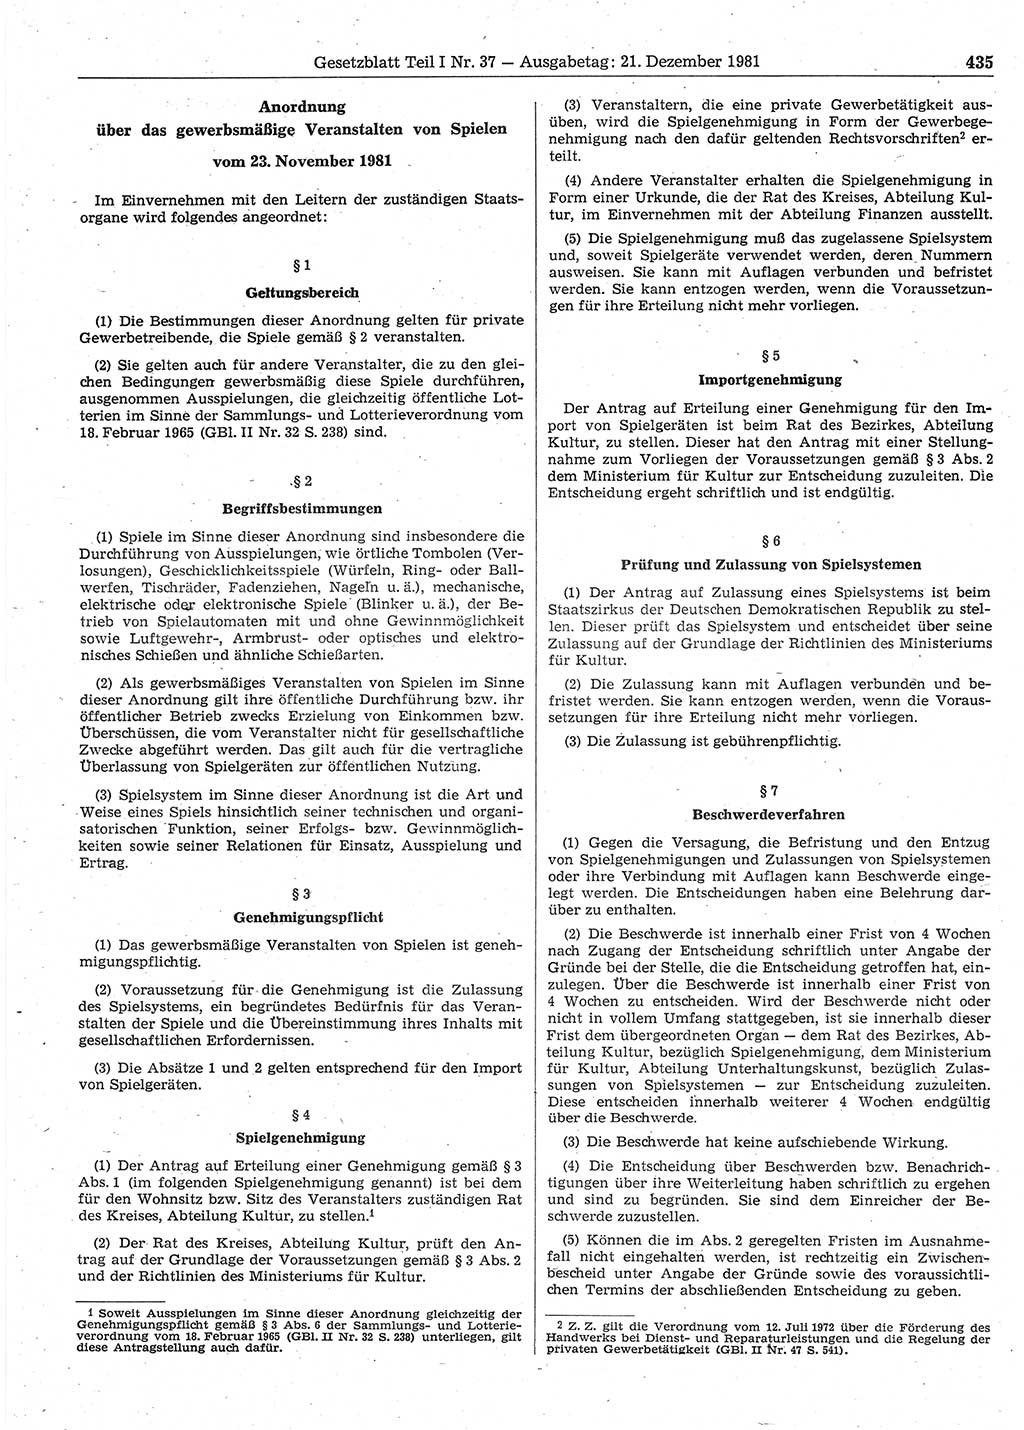 Gesetzblatt (GBl.) der Deutschen Demokratischen Republik (DDR) Teil Ⅰ 1981, Seite 435 (GBl. DDR Ⅰ 1981, S. 435)